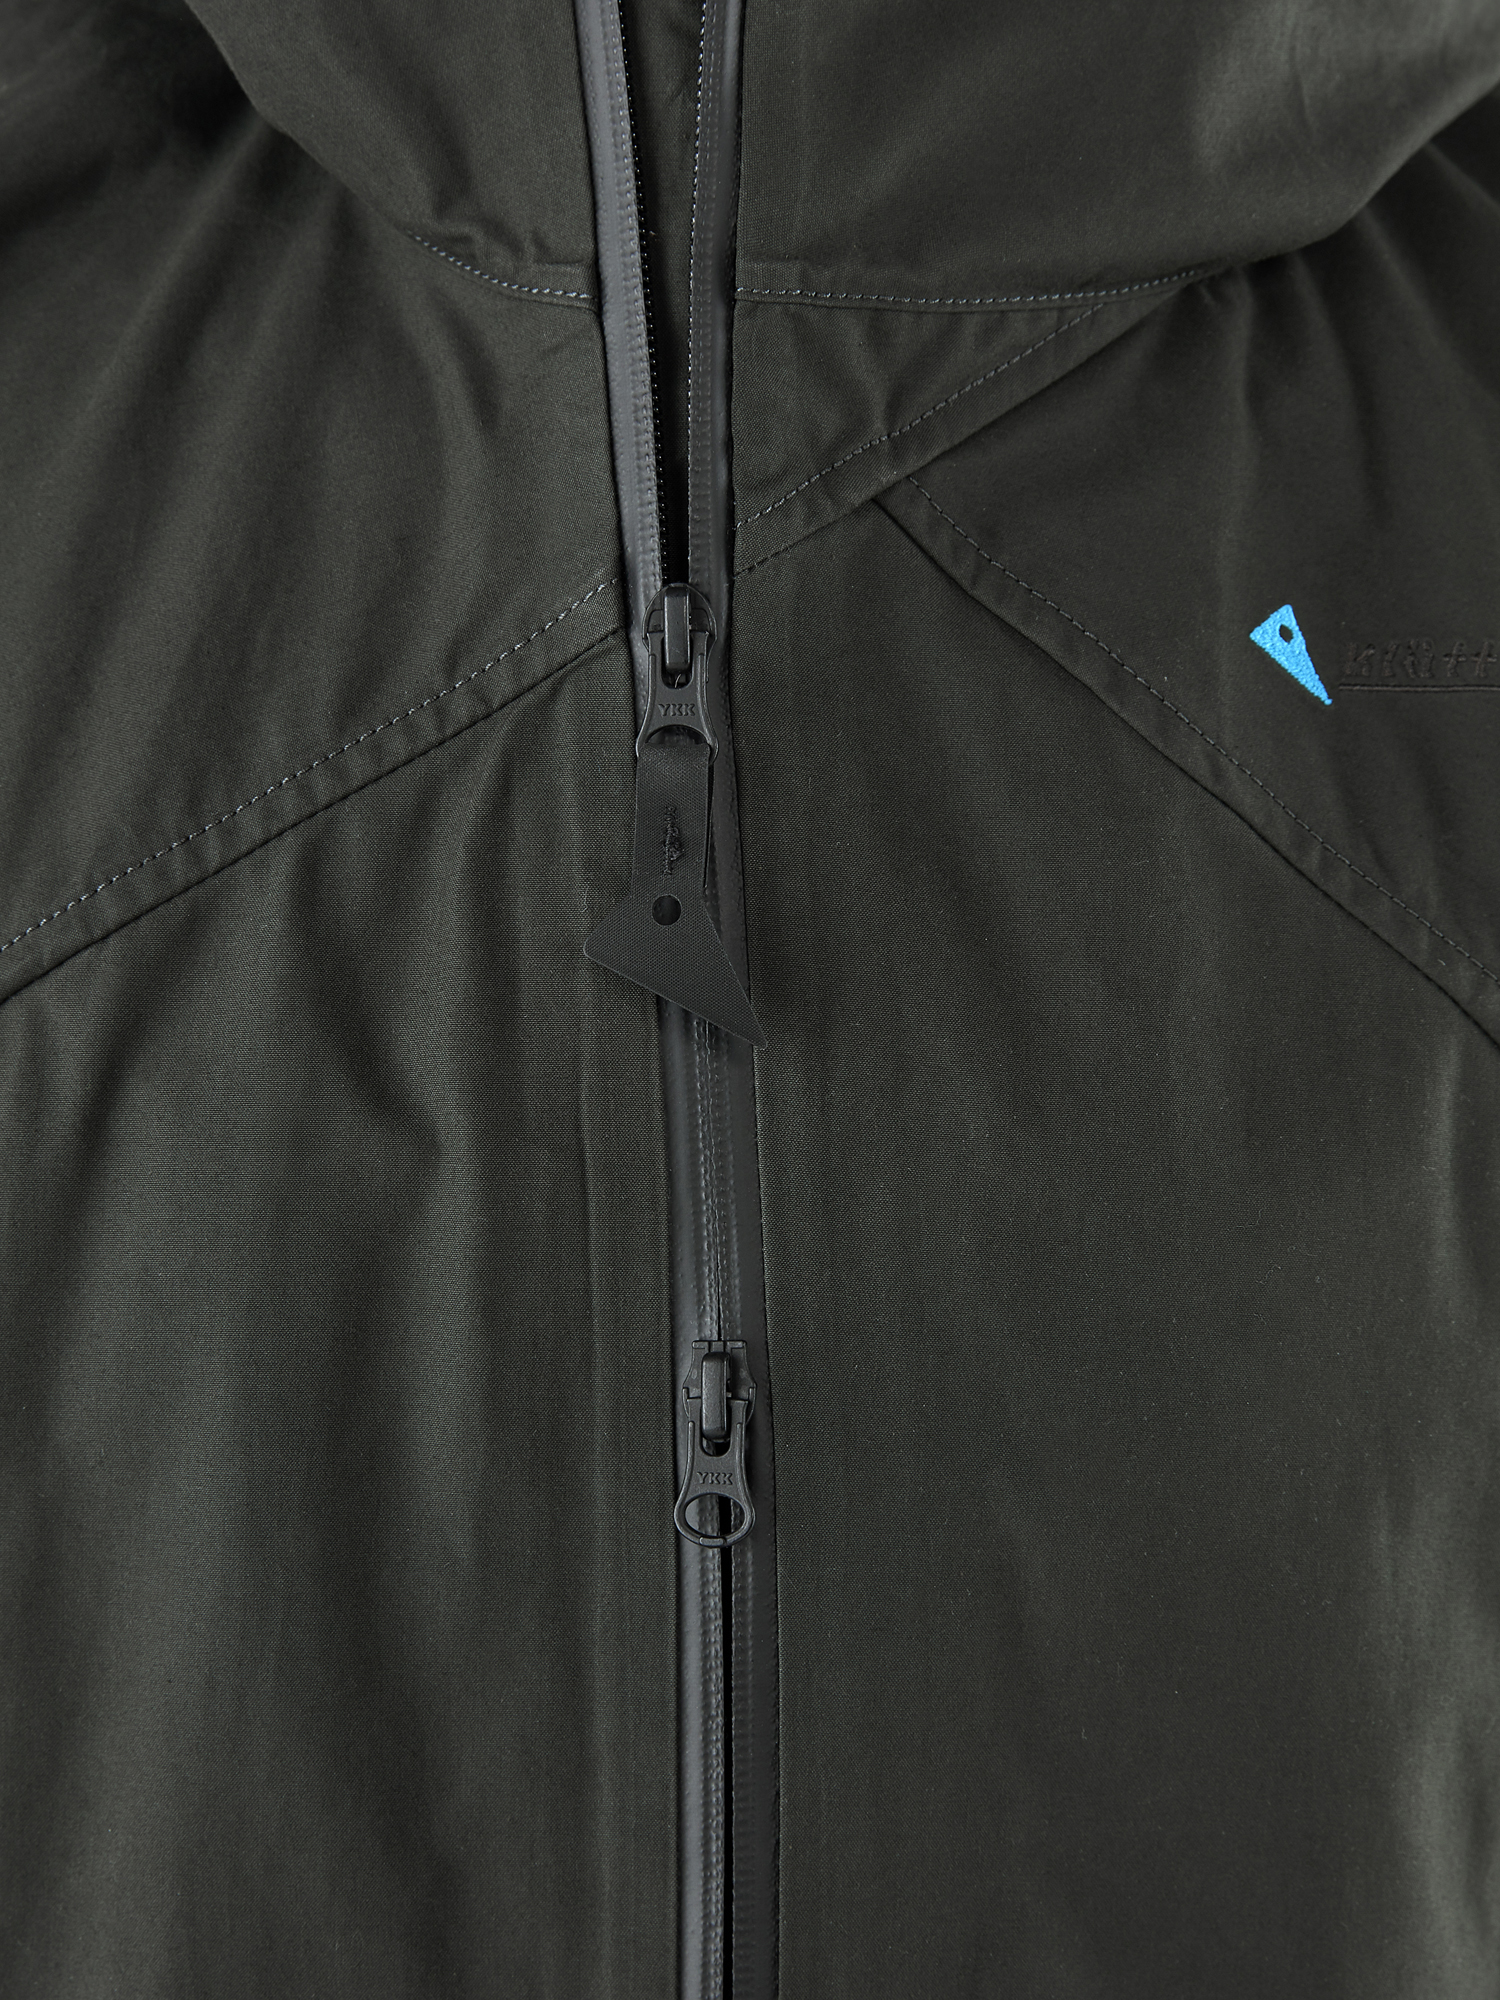 10607W91 - Einride Jacket W's - Charcoal